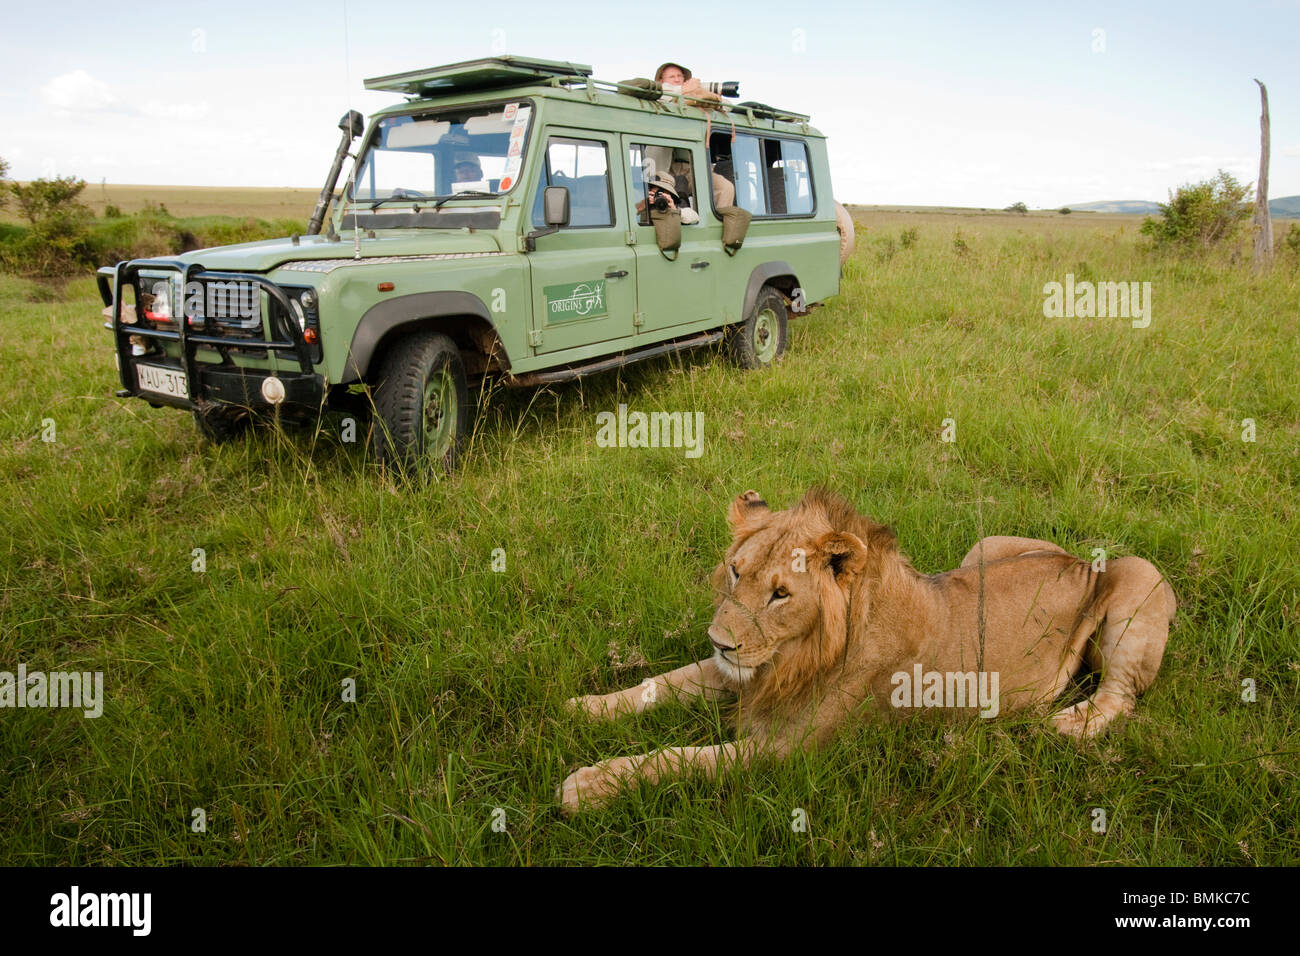 L'African Lion, Panthera leo, devant des véhicules de tourisme dans le Masai Mara au Kenya, GR. Banque D'Images